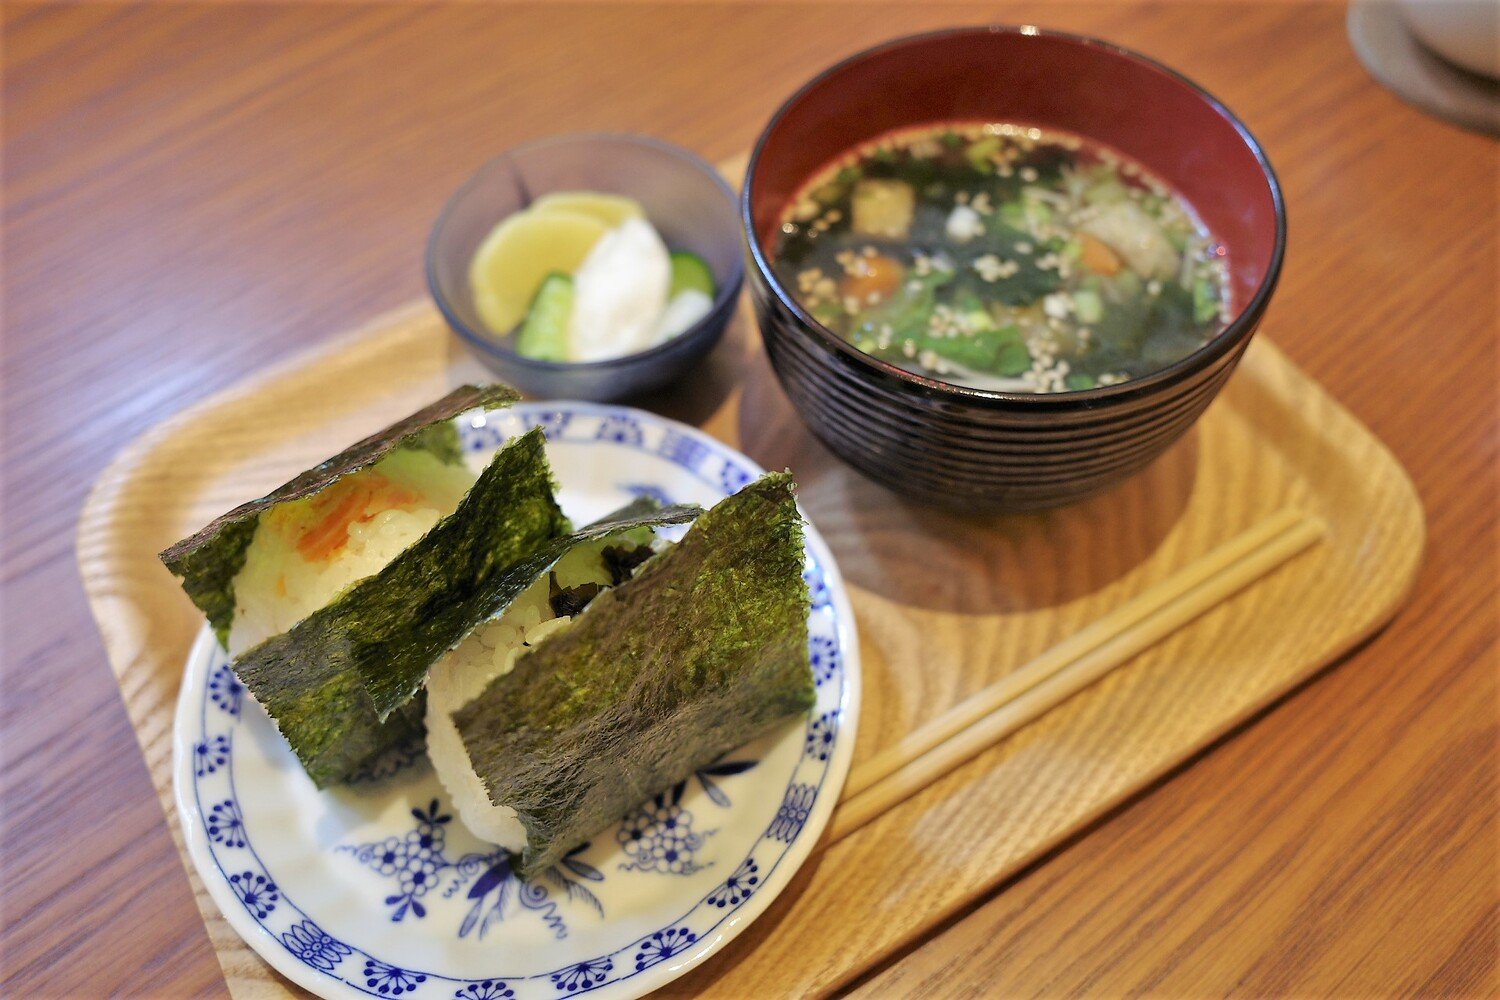 おにぎりセット600円。具を2種類選べるおにぎりは、宮城県産のササニシキを使用。シンプルながら丁寧さを感じる野菜たっぷりのスープも美味。